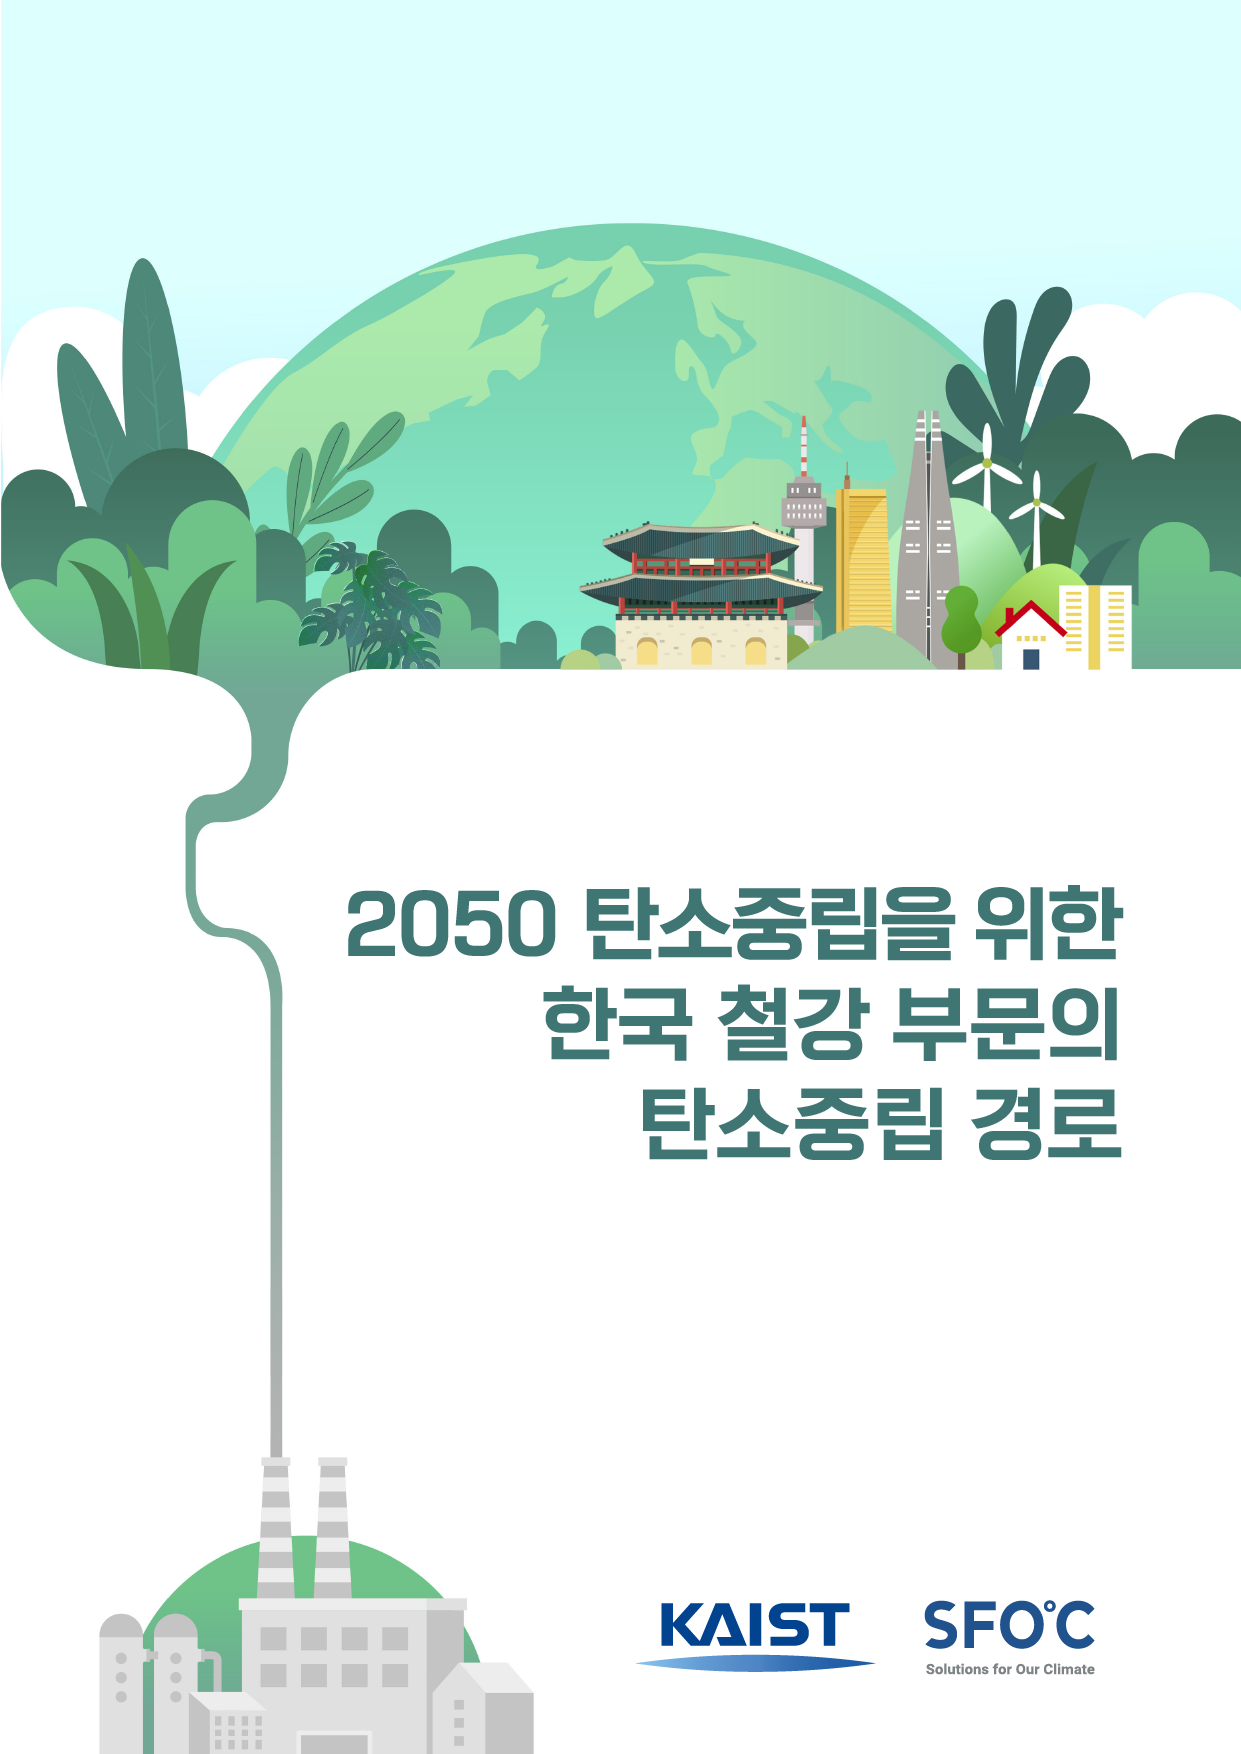 2050 탄소중립을 위한 한국 철강 부문의 탄소중립 경로